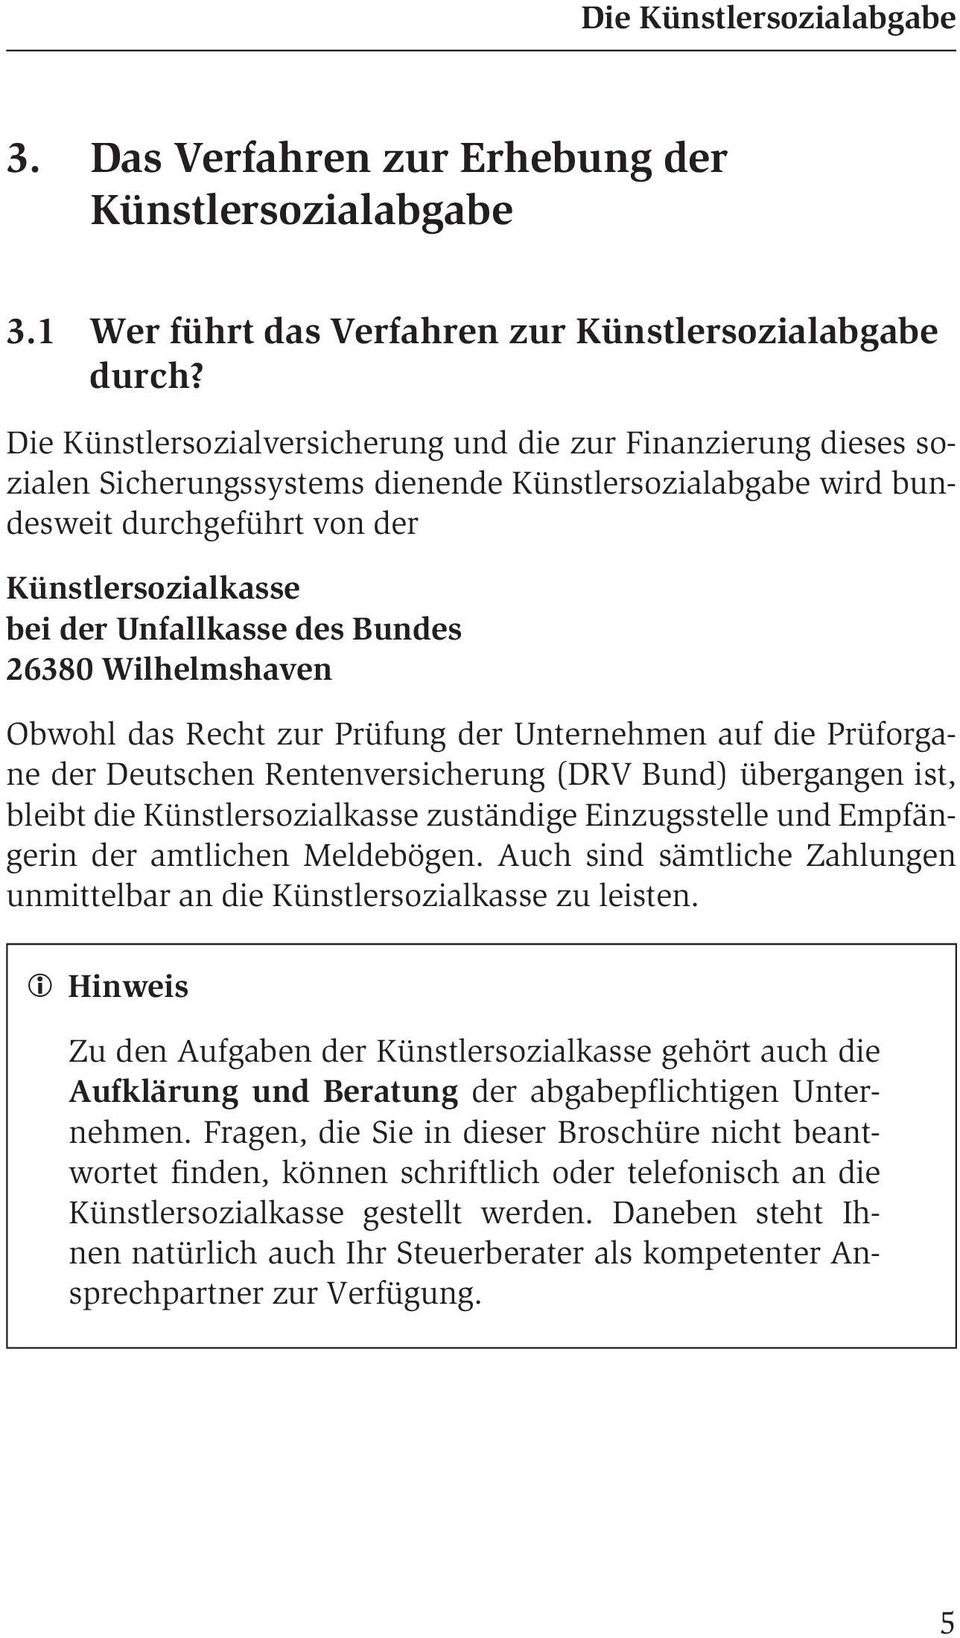 des Bundes 26380 Wilhelmshaven Obwohl das Recht zur Prüfung der Unternehmen auf die Prüforgane der Deutschen Rentenversicherung (DRV Bund) übergangen ist, bleibt die Künstlersozialkasse zuständige